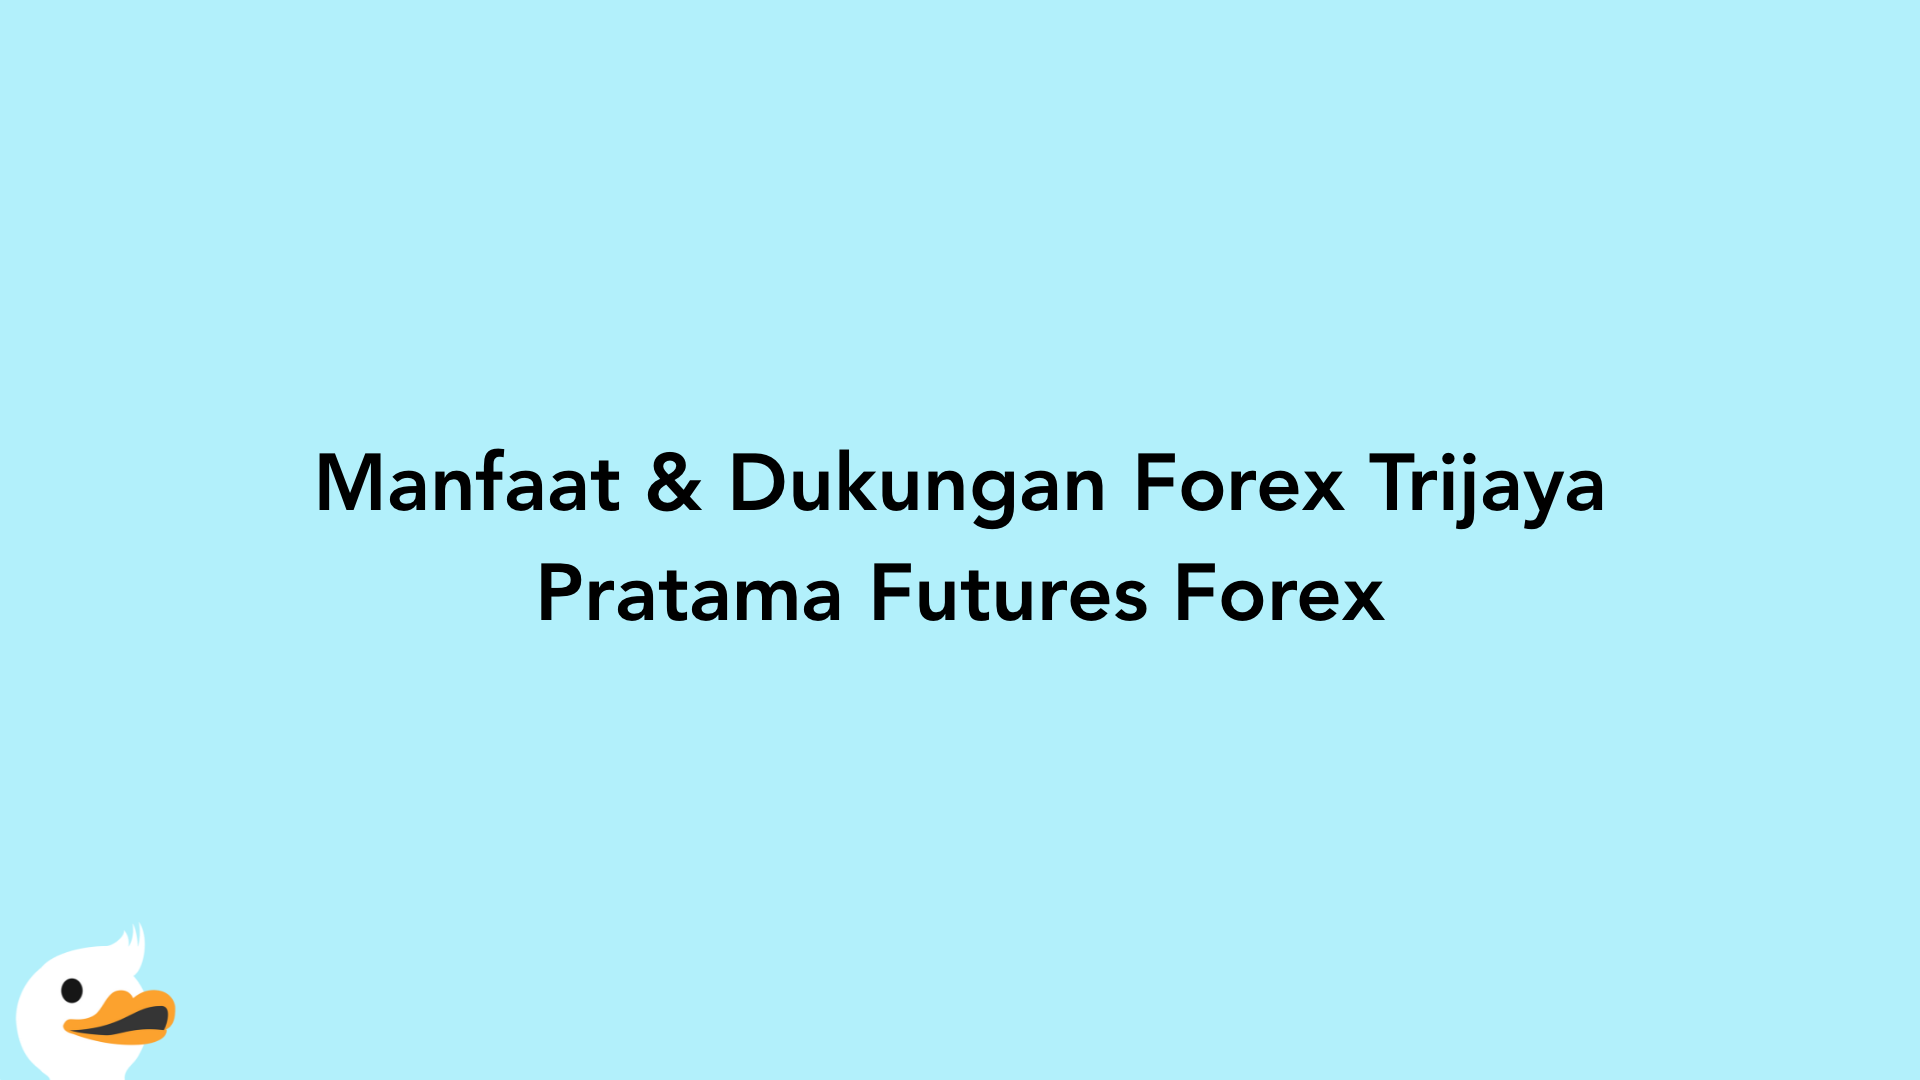 Manfaat & Dukungan Forex Trijaya Pratama Futures Forex